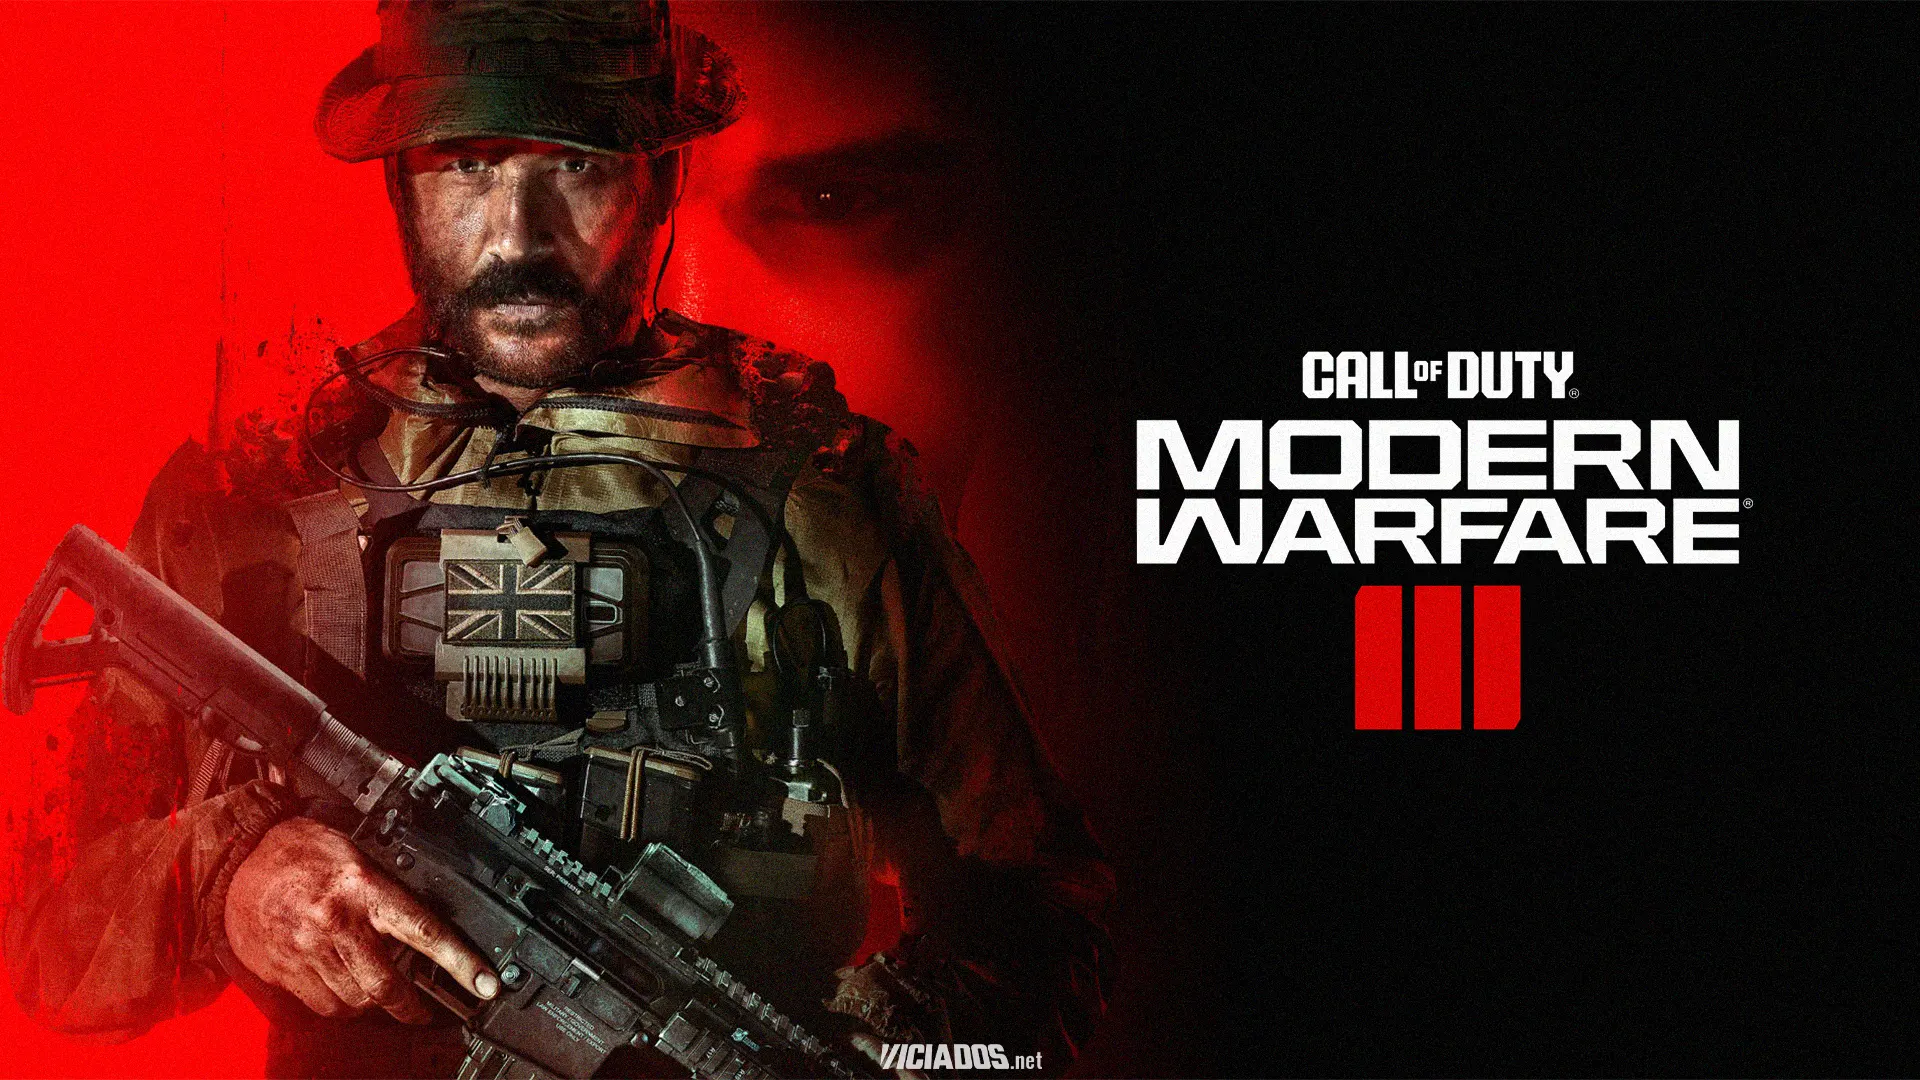 Pré-venda de Call of Duty Modern Warfare 3 já está disponível; Reserve já o seu! 2023 Viciados